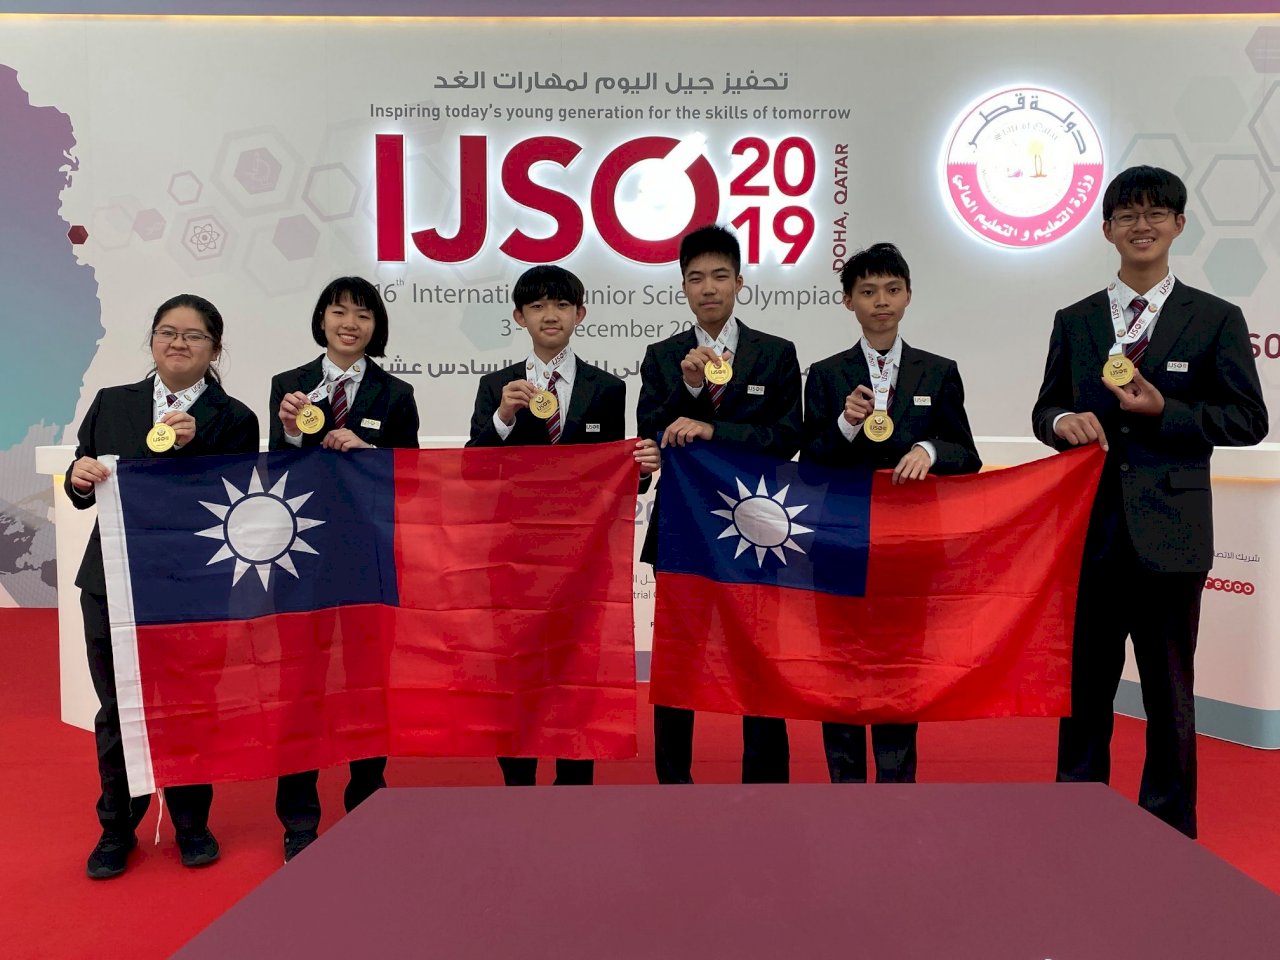 國際國中科學奧林匹亞賽 台學子獲6金世界第2